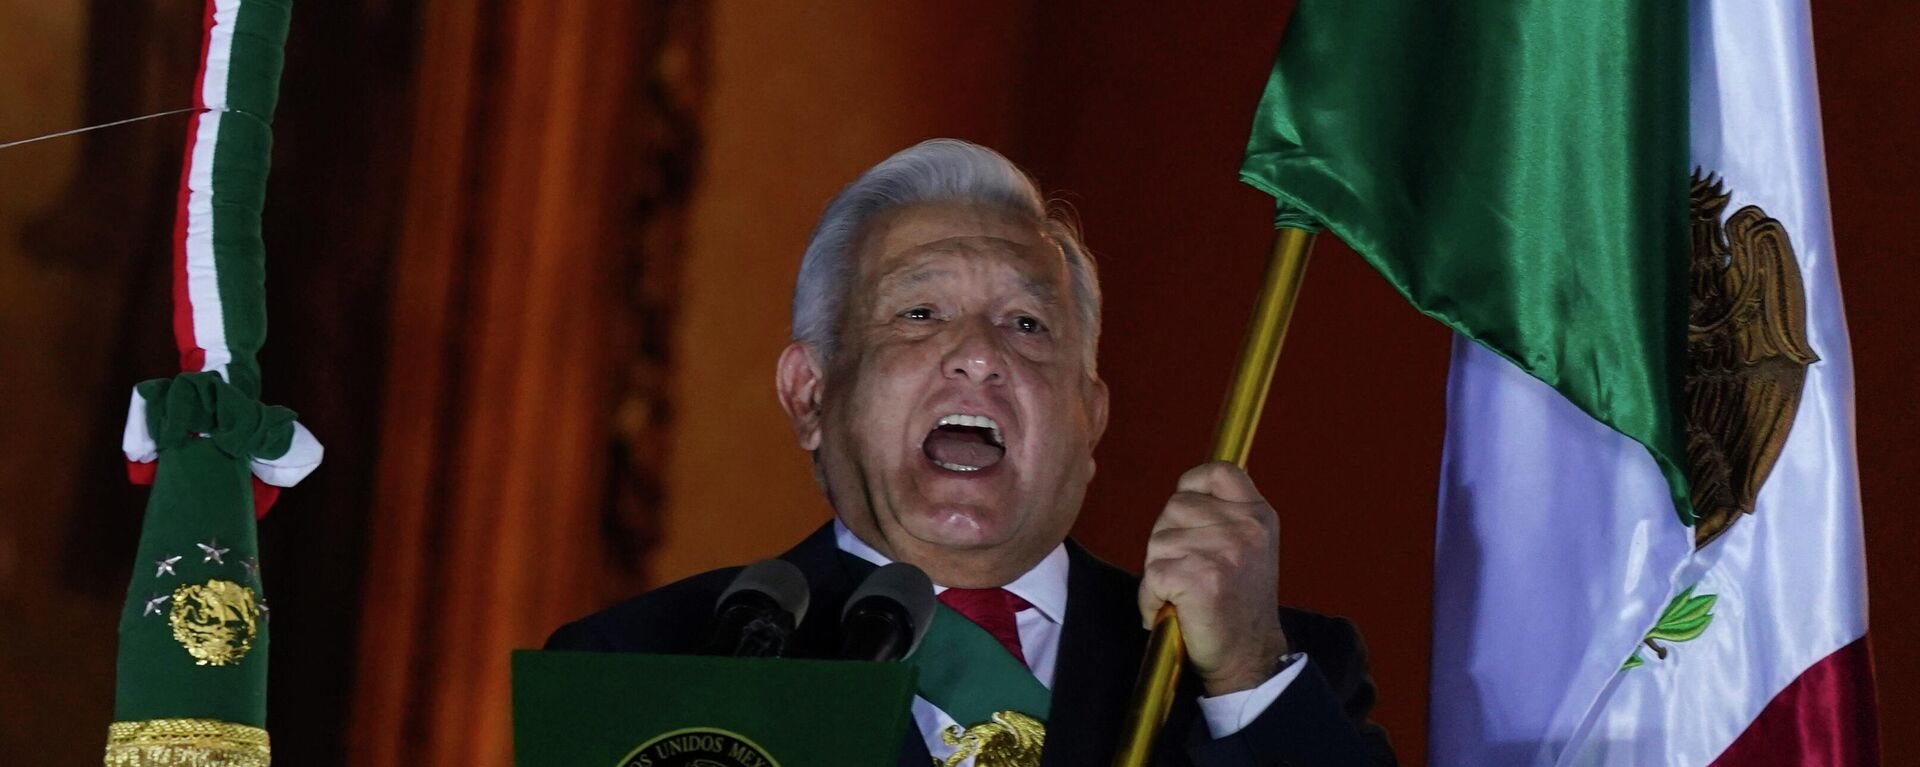 O presidente mexicano, Andrés Manuel López Obrador, dá o grito característico do início das comemorações do Dia da Independência, no Palácio Nacional, sede do Poder Executivo. Cidade do México, 15 de setembro de 2022 - Sputnik Brasil, 1920, 19.02.2023